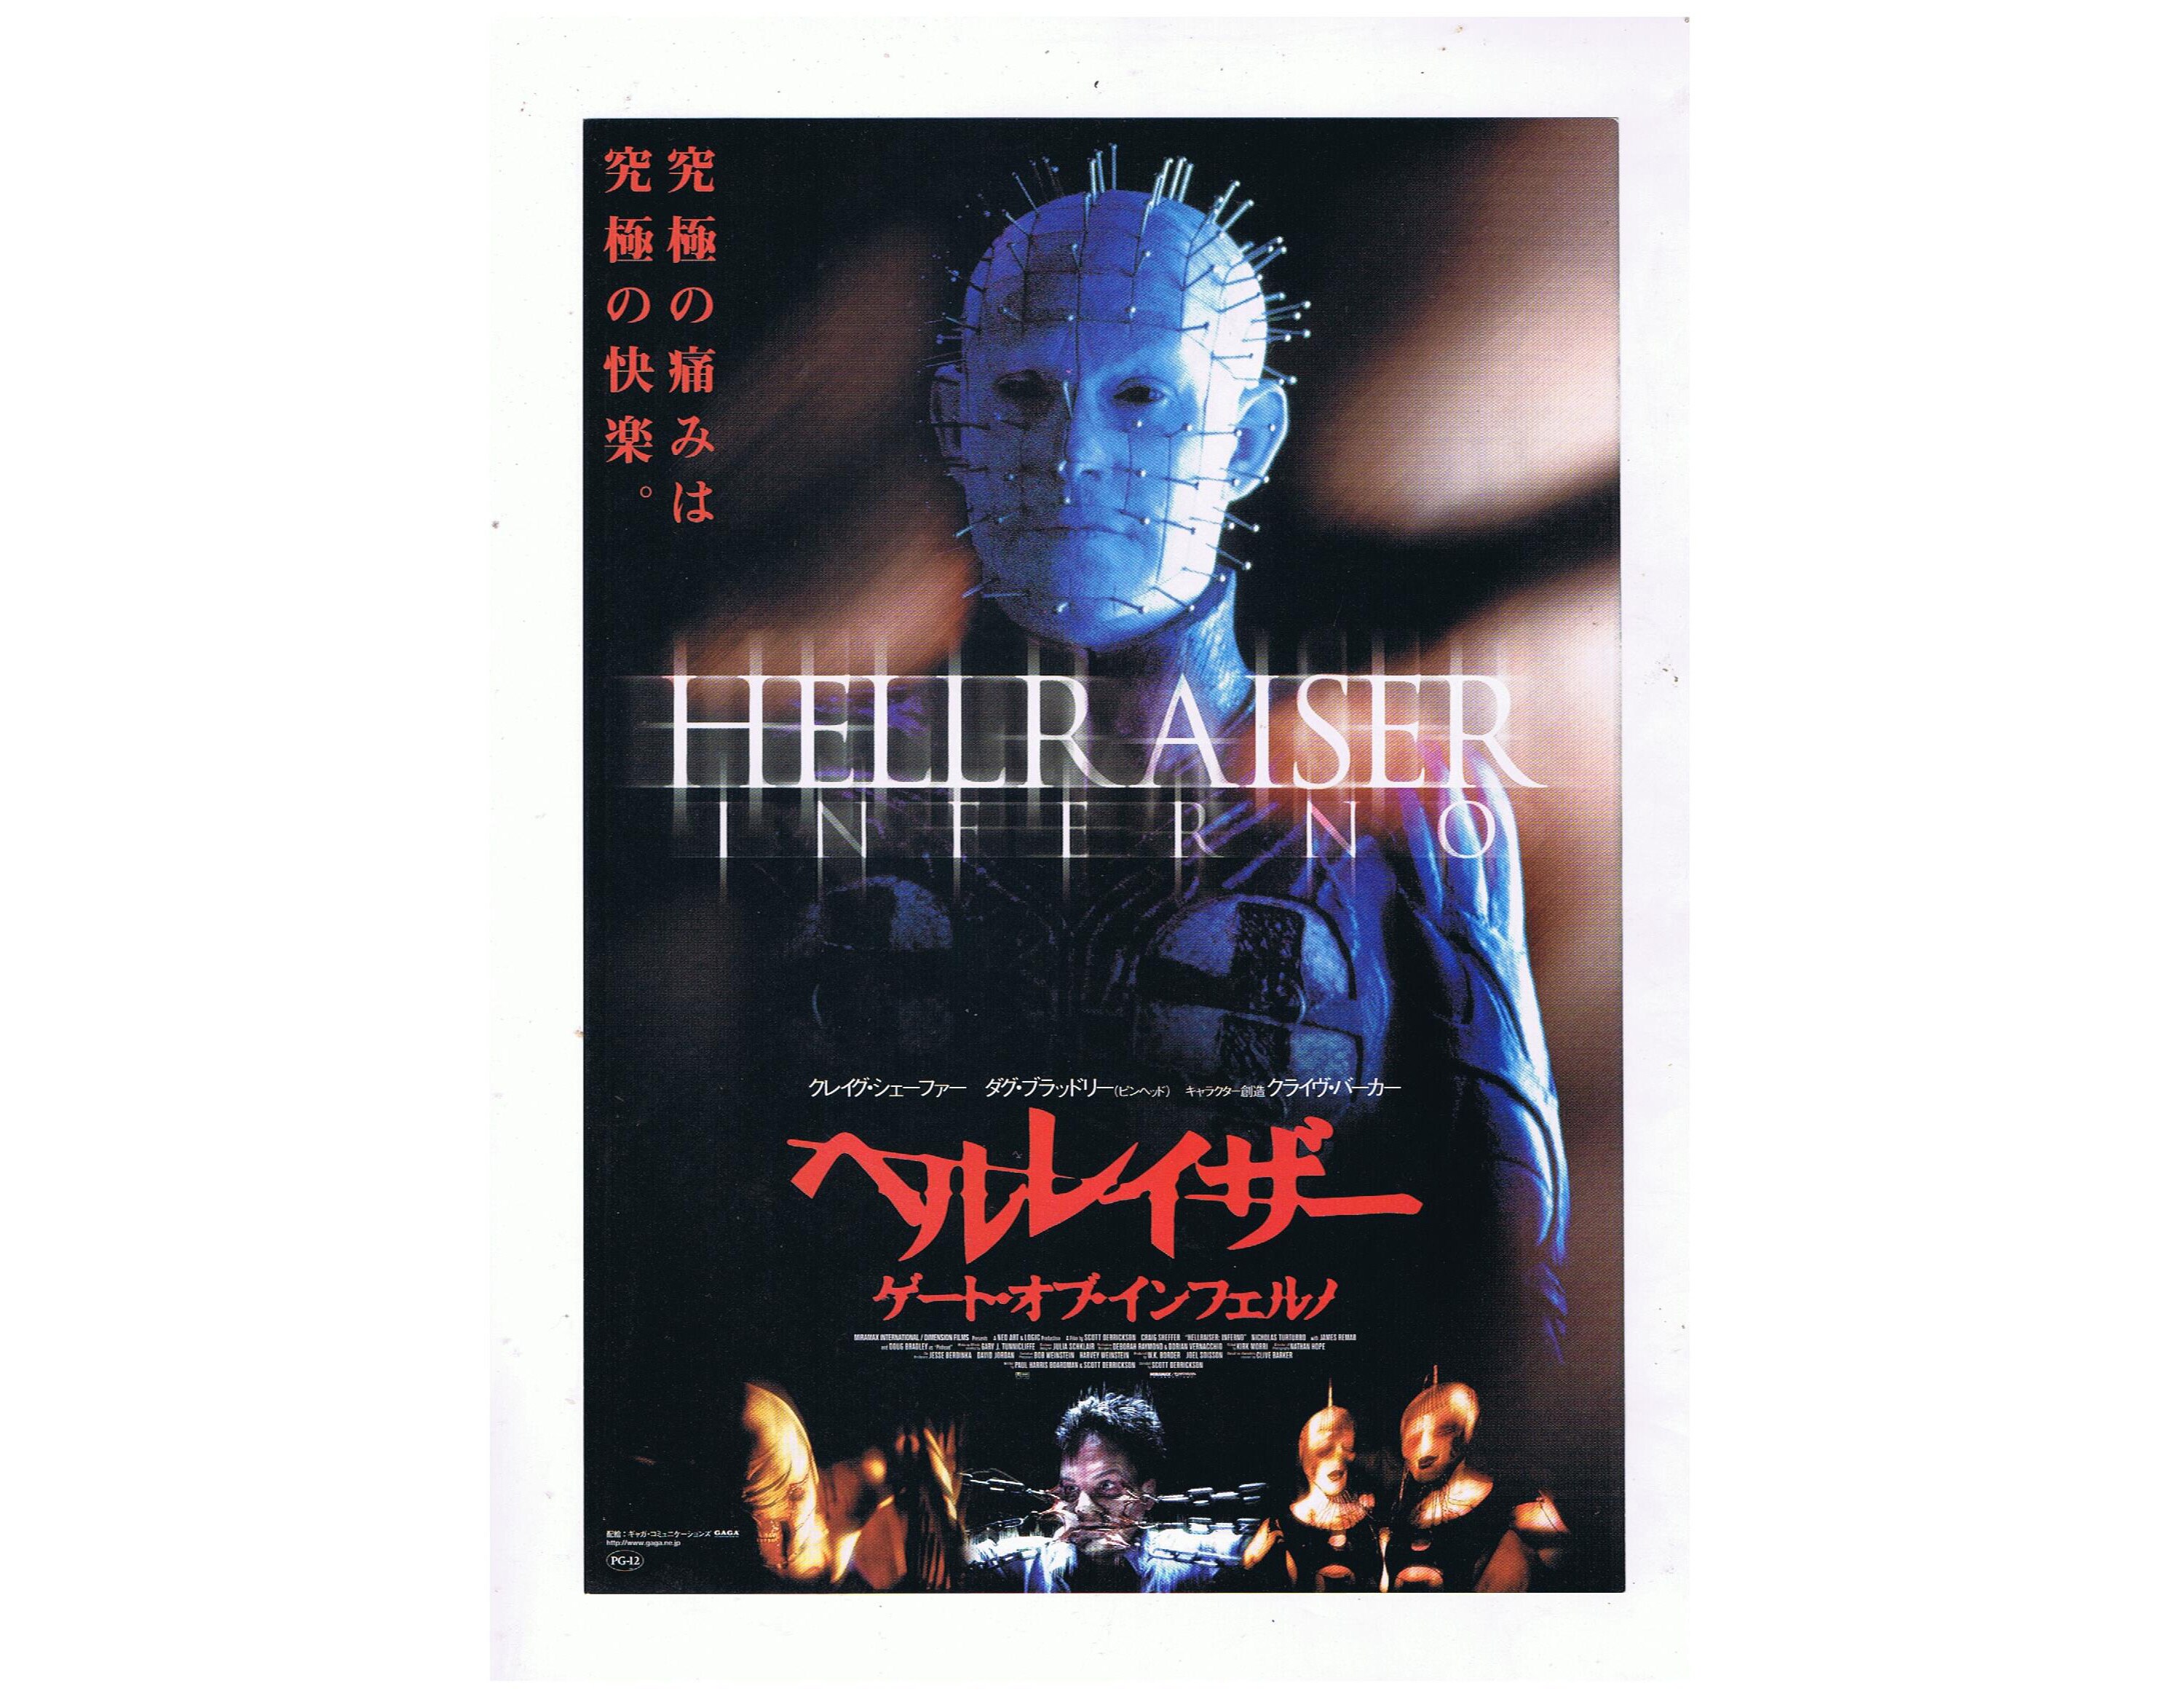 Hellraiser Inferno Horror Slasher Film Vintage Japanese Movie Poster